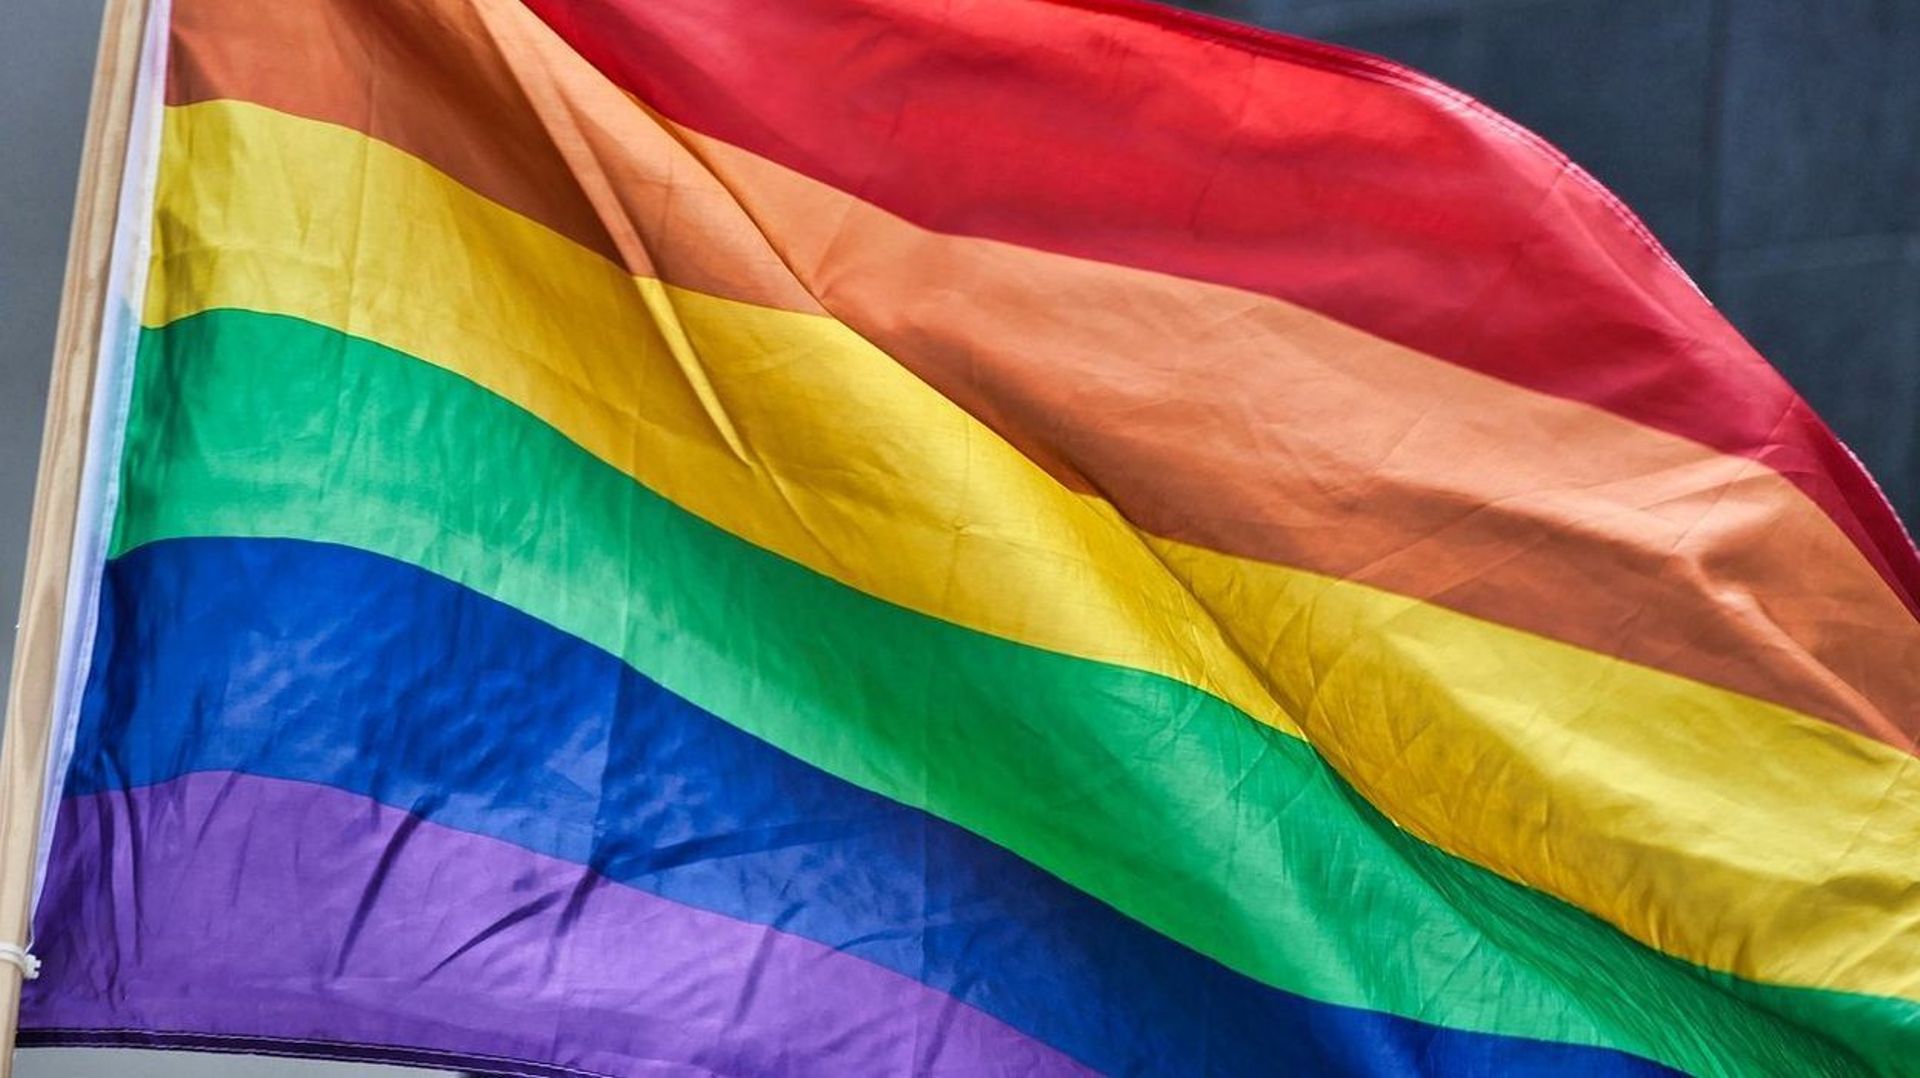 Unia a ouvert un nombre record de dossiers liés à l'homophobie en 2019